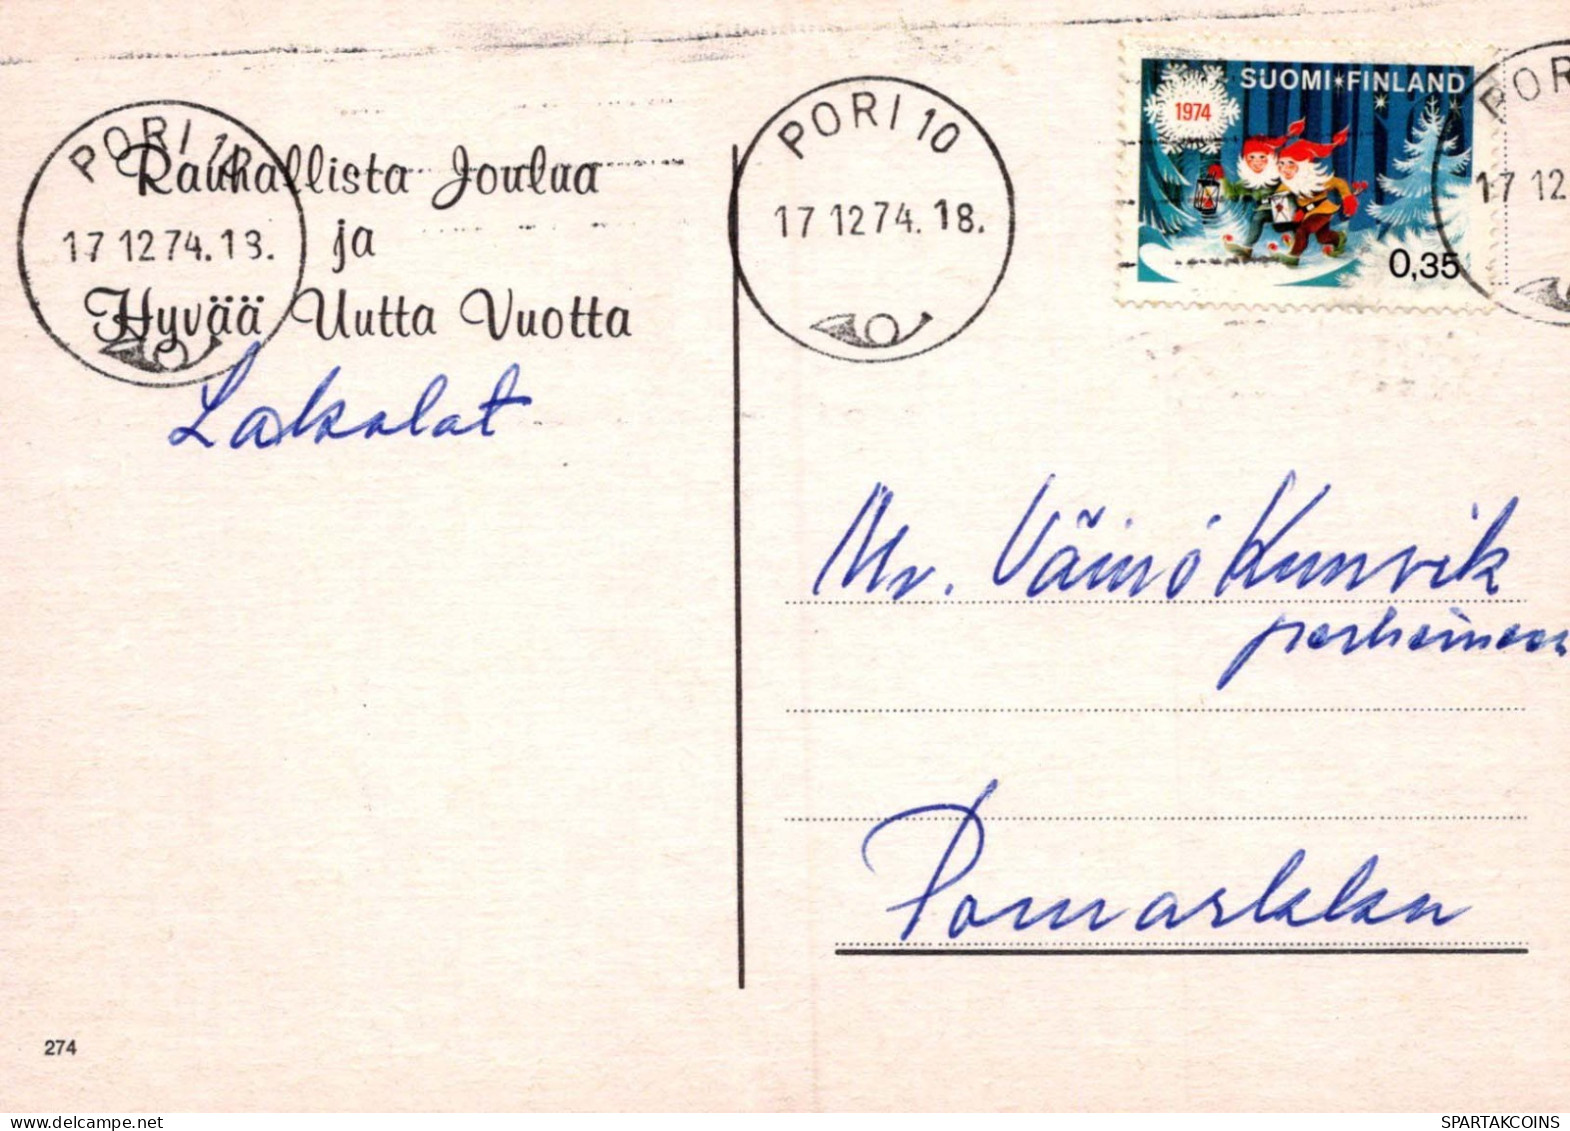 Feliz Año Navidad CAMPANA VELA Vintage Tarjeta Postal CPSM #PAV404.ES - New Year